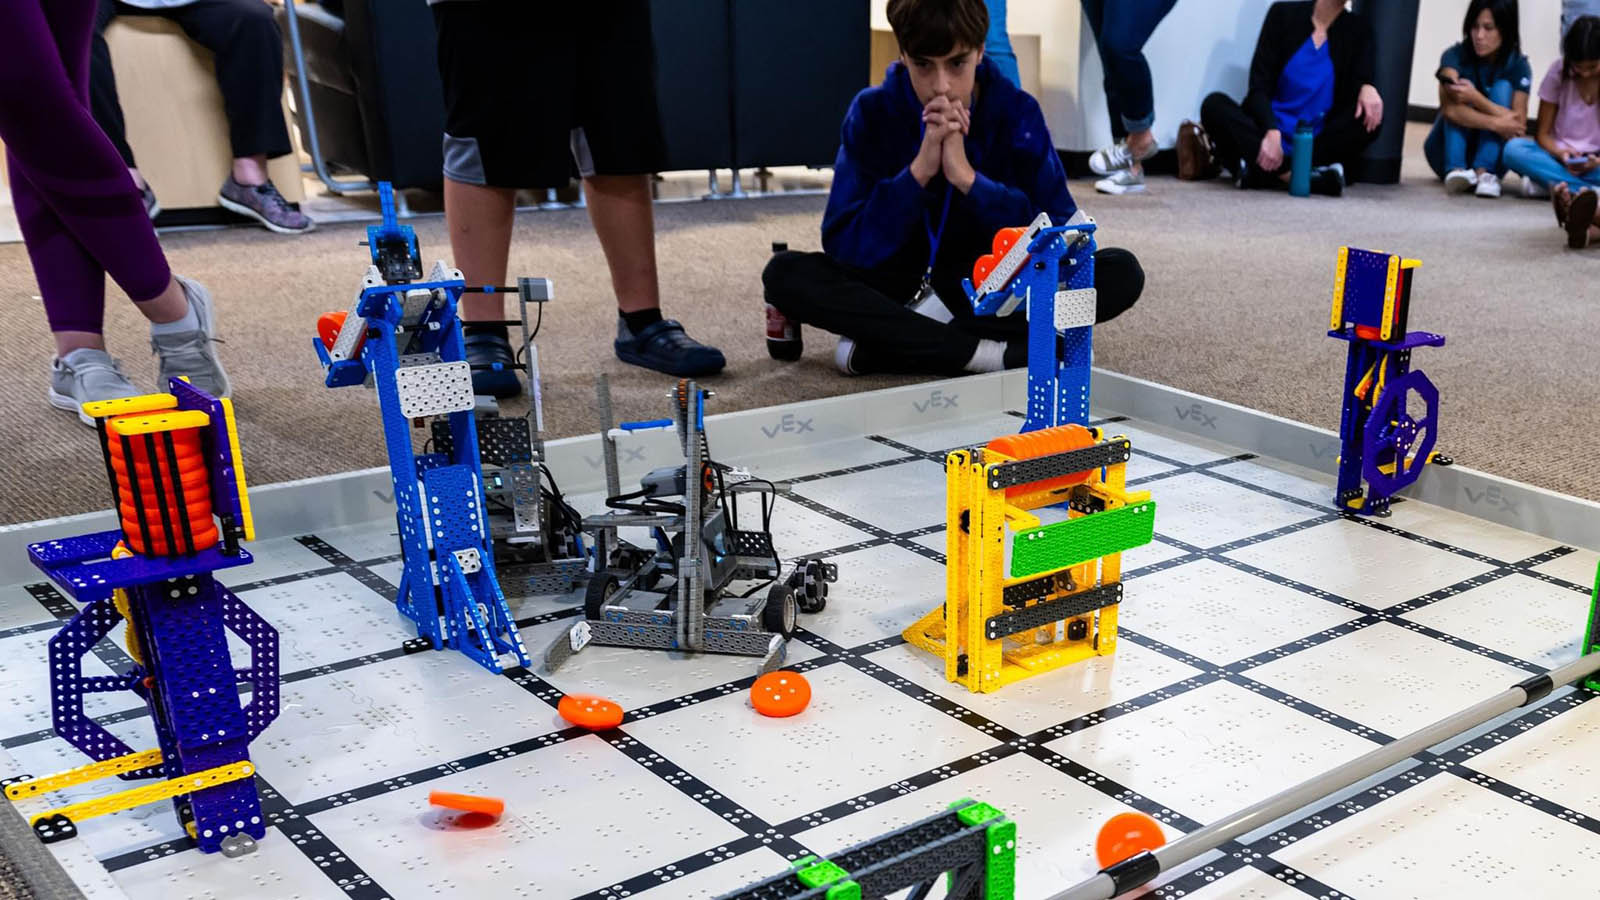 Camper looks on at robots on display on floor